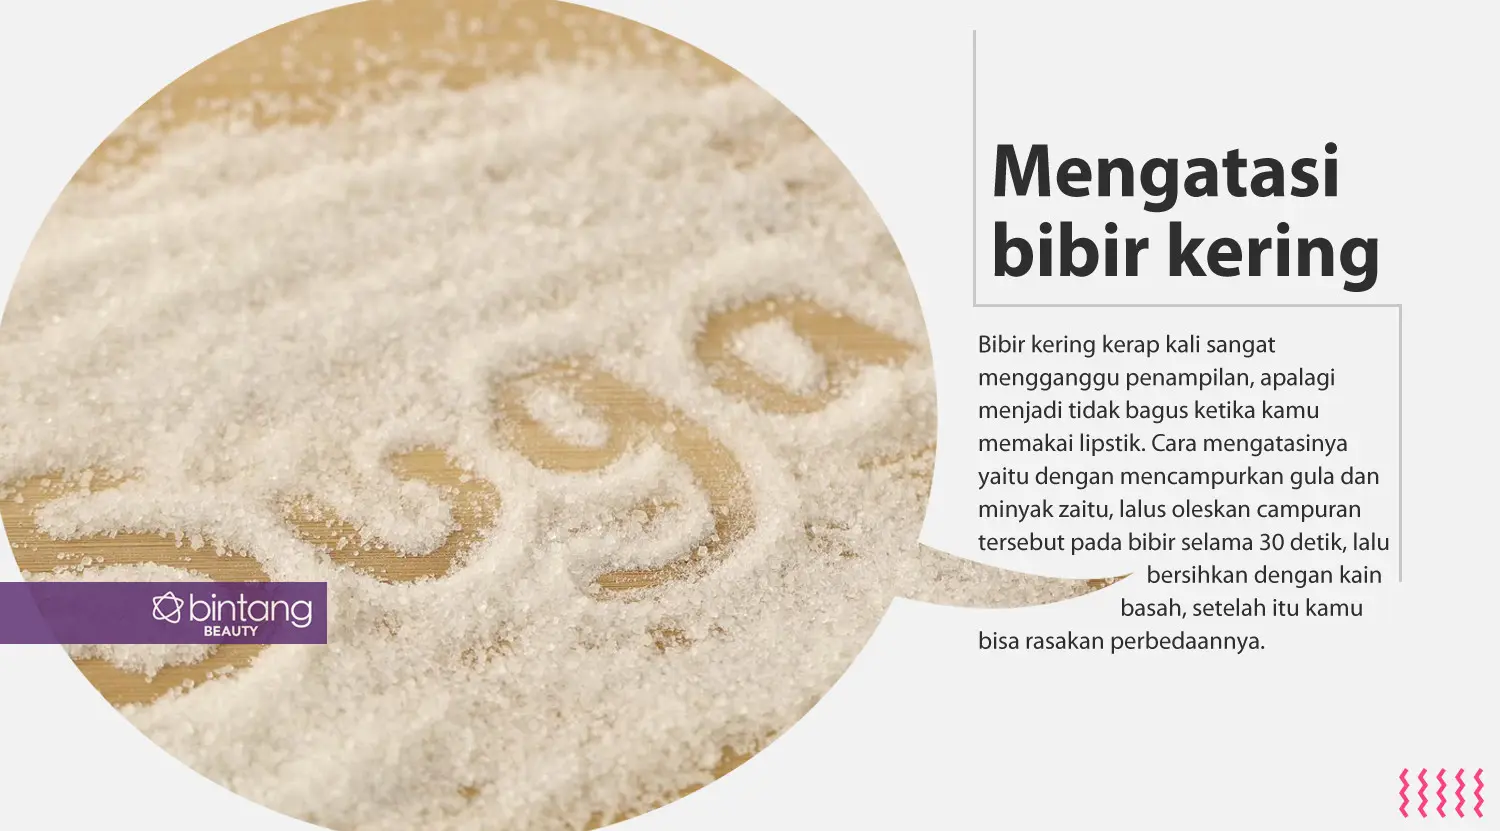 Gula pasir. (Foto: Daniel Kampua/Bintang.com, Digital Imaging: Nurman Abdul Hakim/Bintang.com).